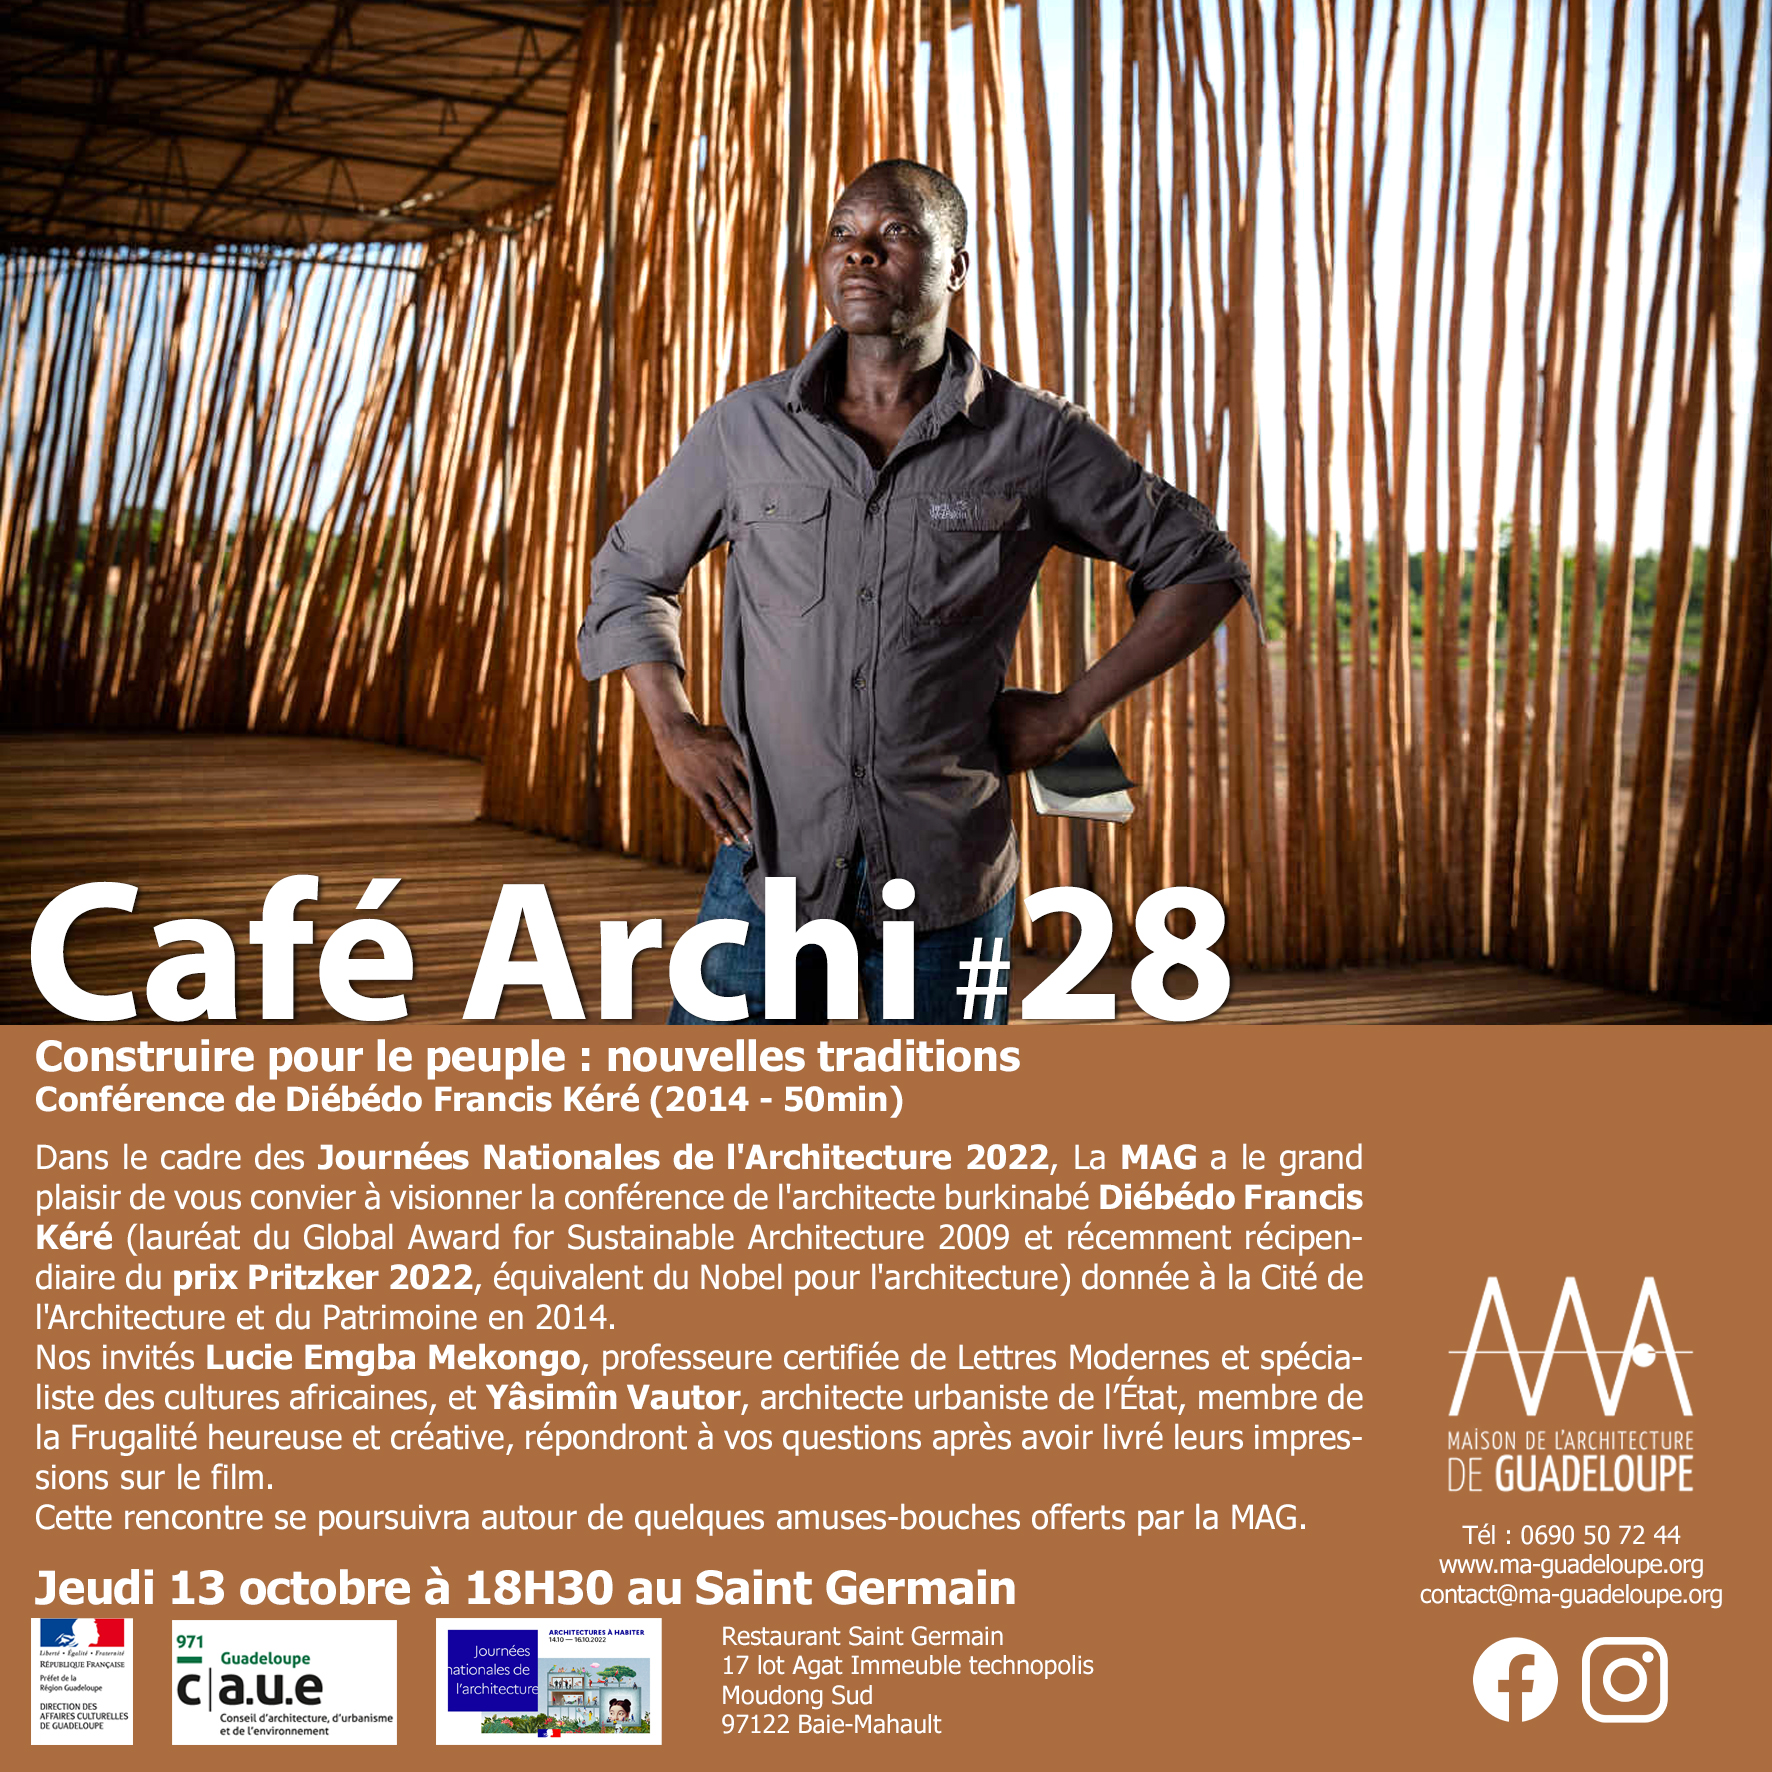 Lire la suite à propos de l’article Café Archi 28 – Construire pour le peuple : nouvelles traditions, le jeudi 13 octobre à 18h30